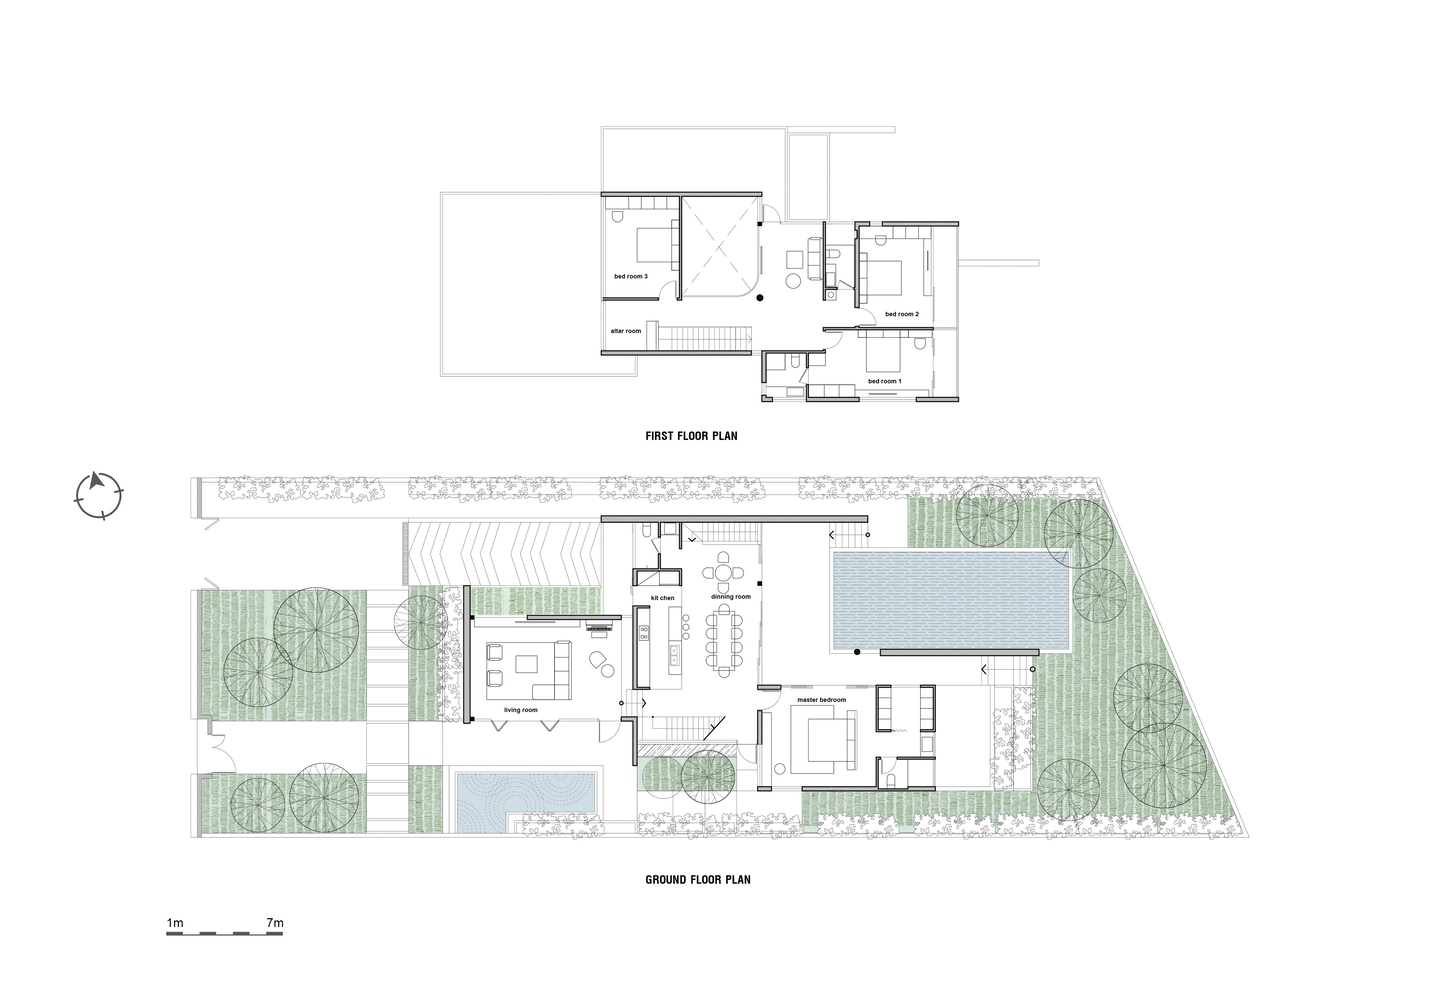 Sơ đồ thiết kế công trình biệt thự H House do G + Architects cung cấp.